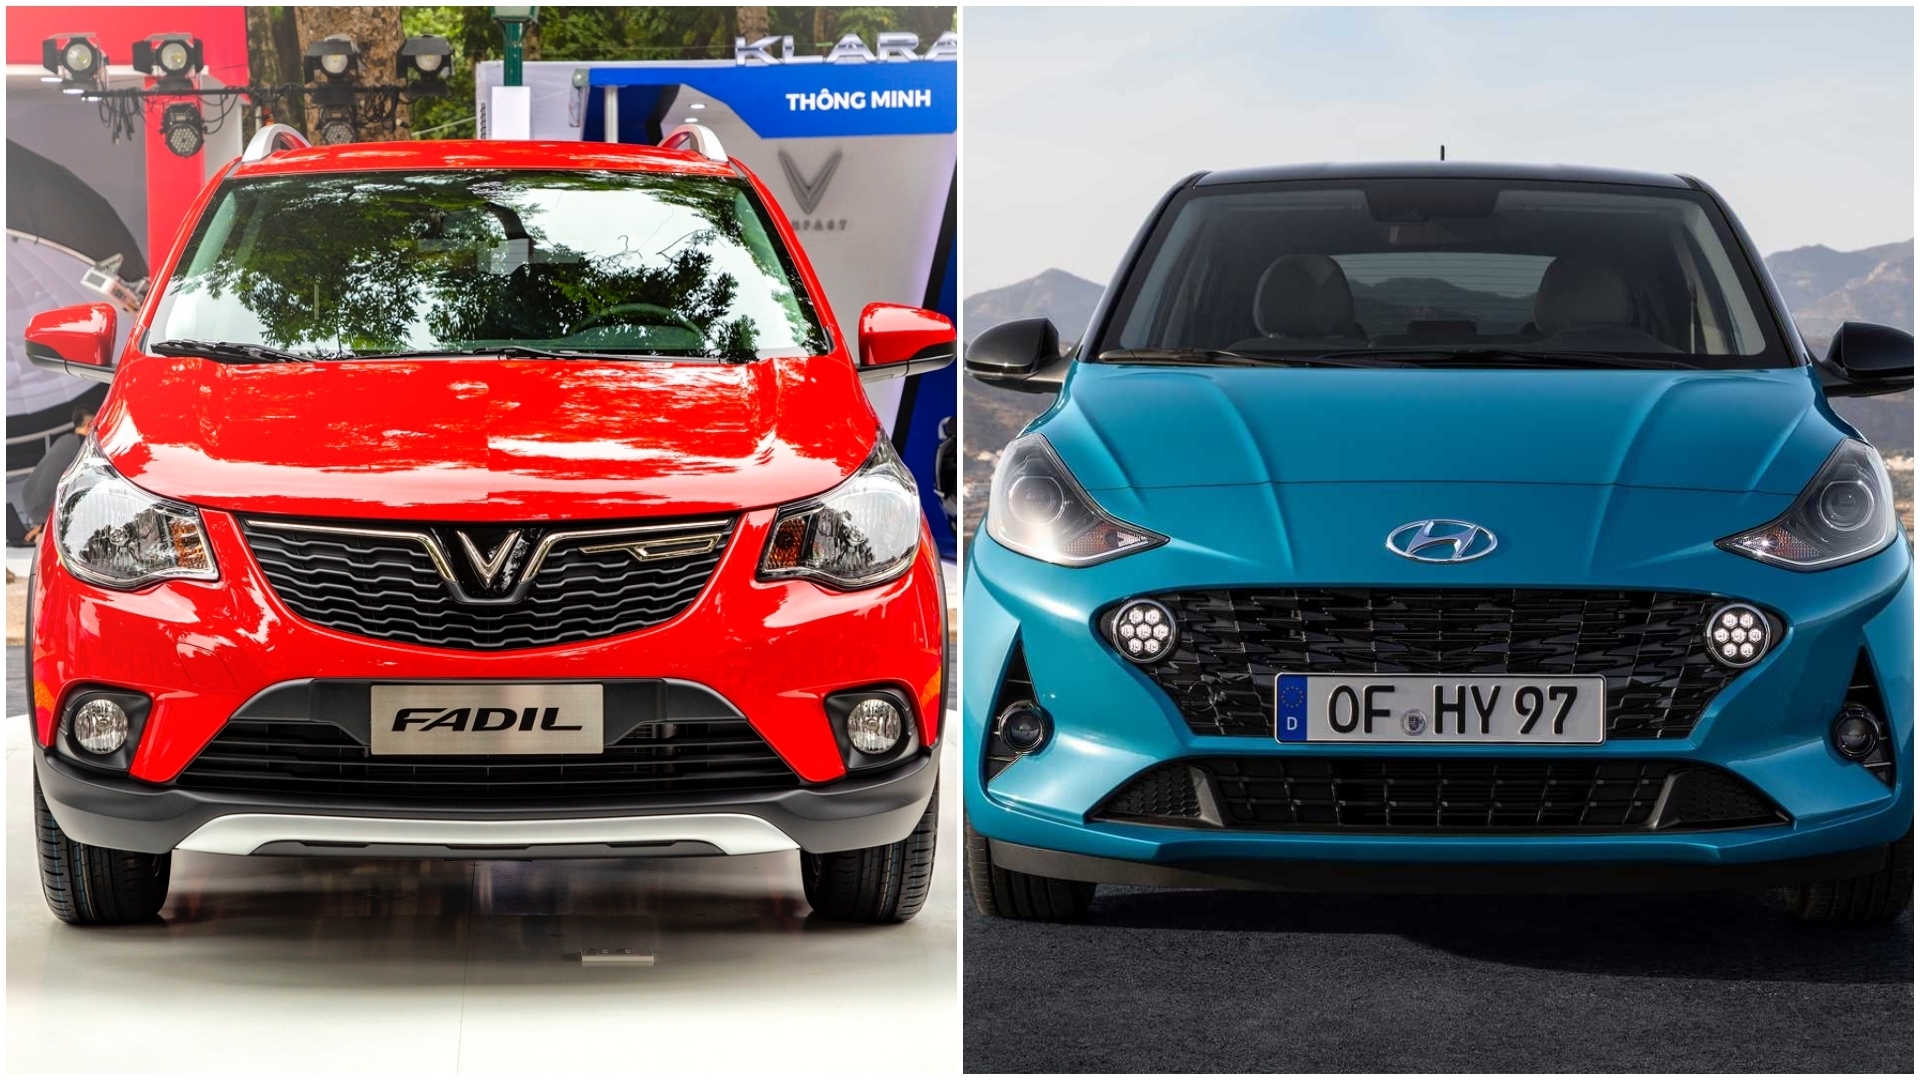 Mua xe lần đầu: Chọn VinFast Fadil hay Hyundai Grand i10?